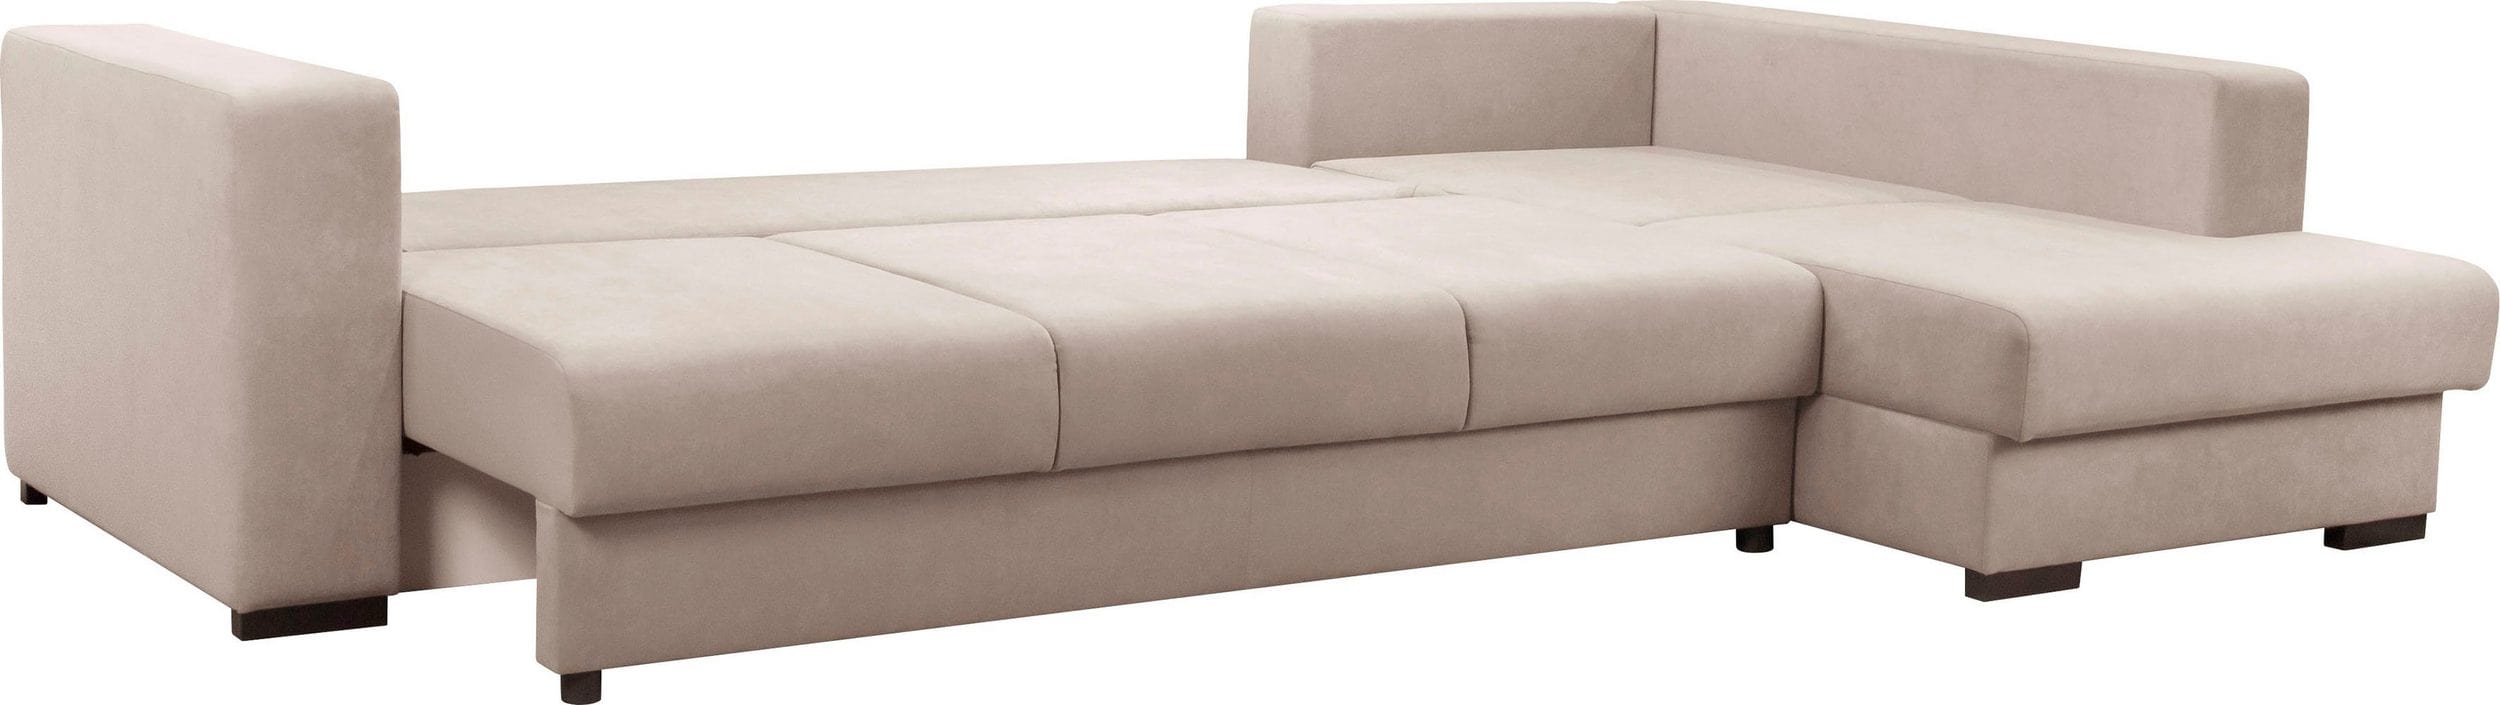 Colțar extensibil cu ladă de depozitare Gloria Pink 325x195 cm | Dumonde Furniture & Deco Concept.